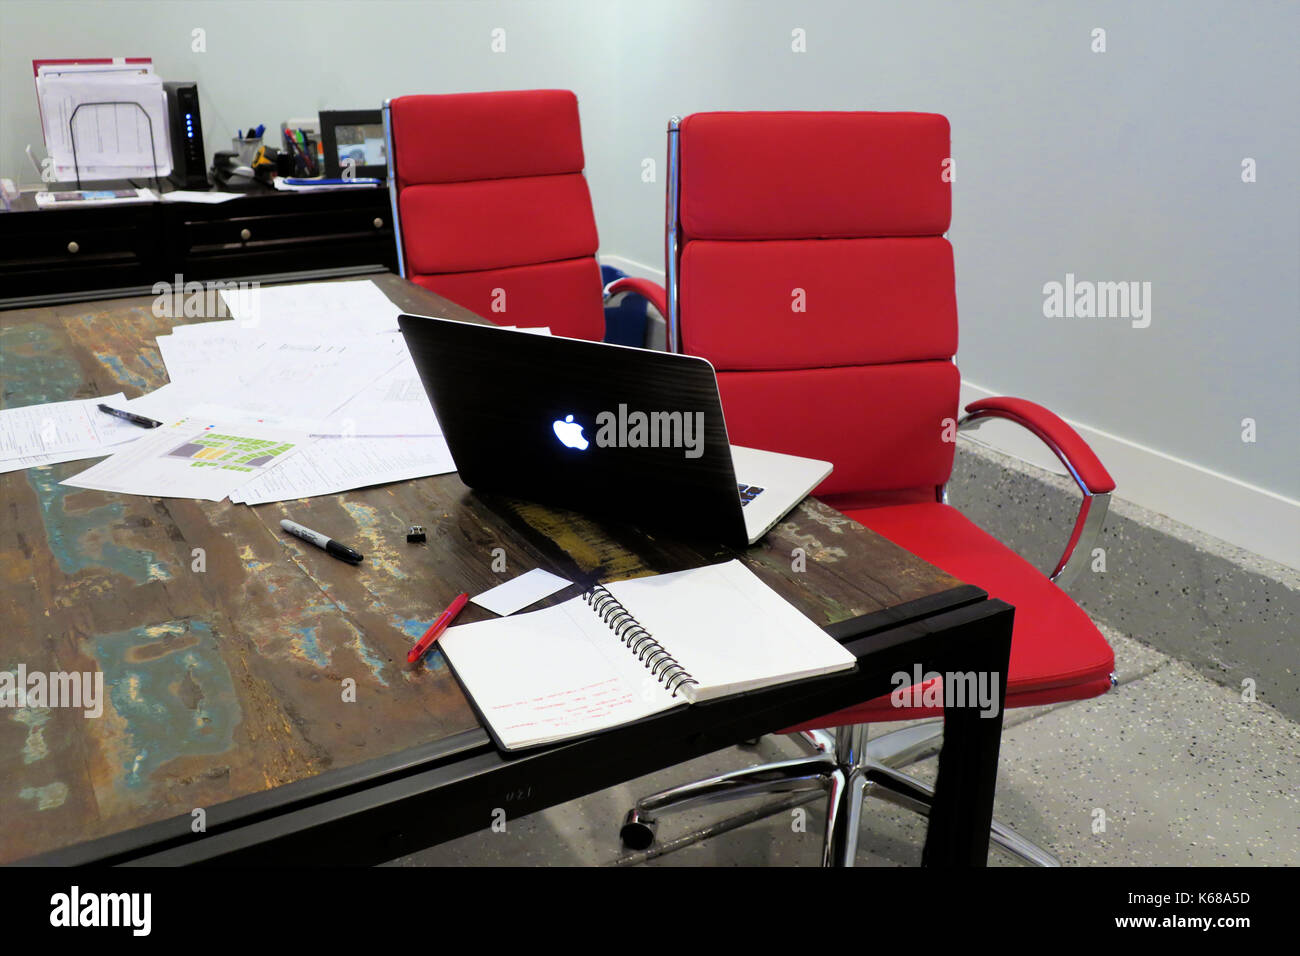 Rosso di due sedie per ufficio seduti ad un tavolo con un mac book portatile aperto seduta accanto a una pila di fogli. Foto Stock